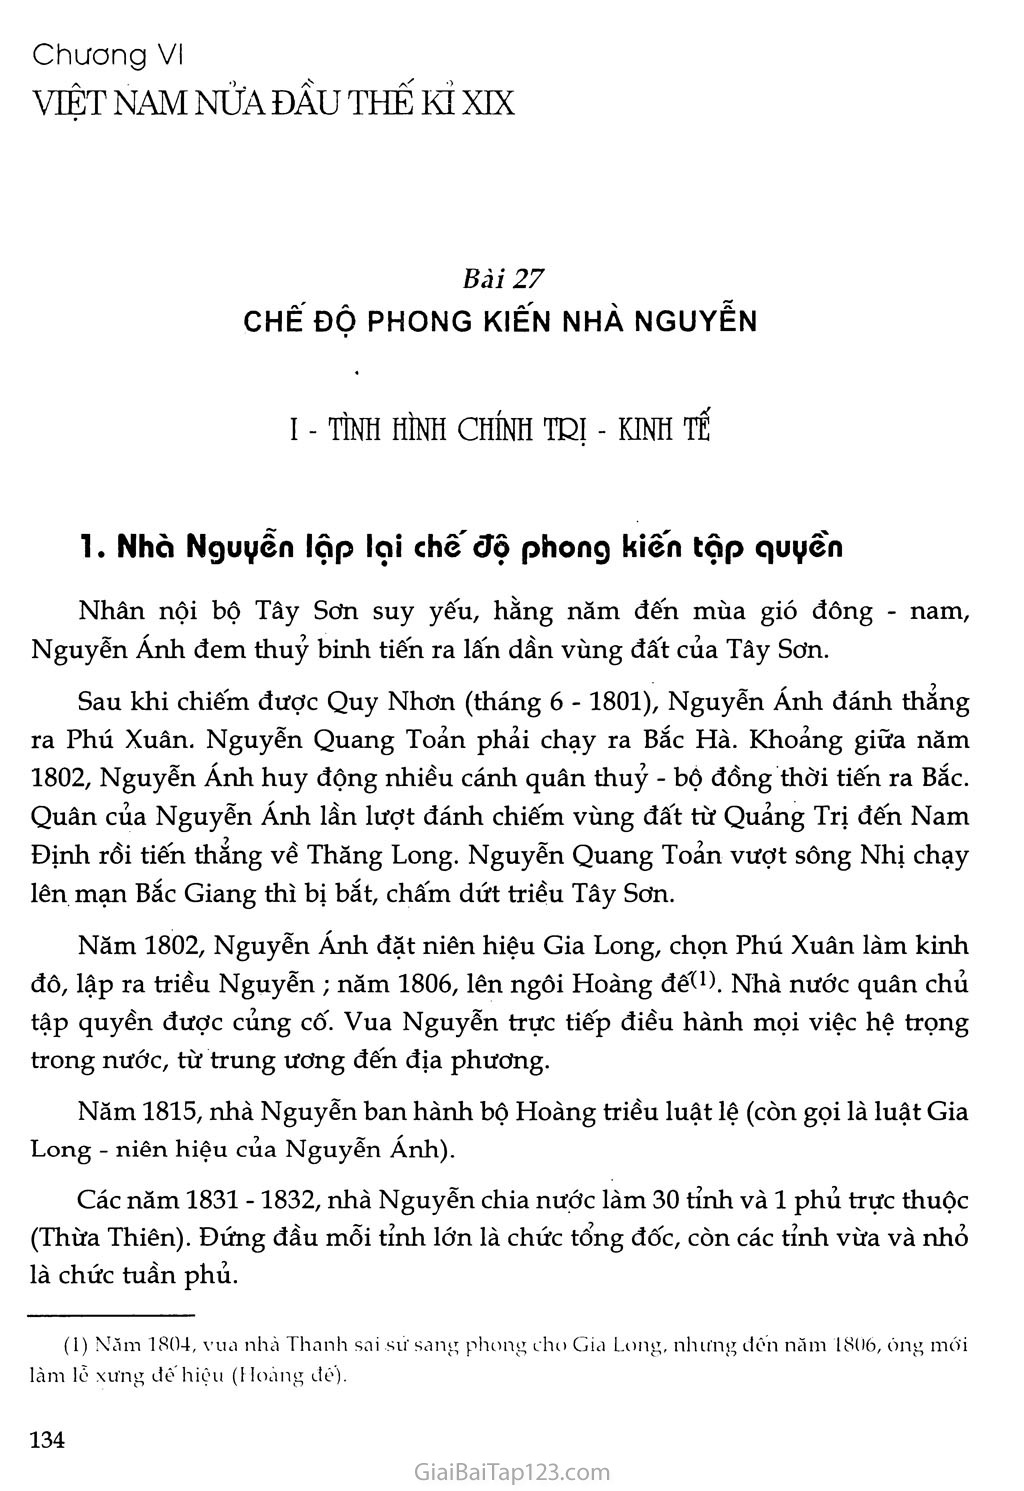 Bài 27 - Chế độ phong kiến nhà Nguyễn trang 1